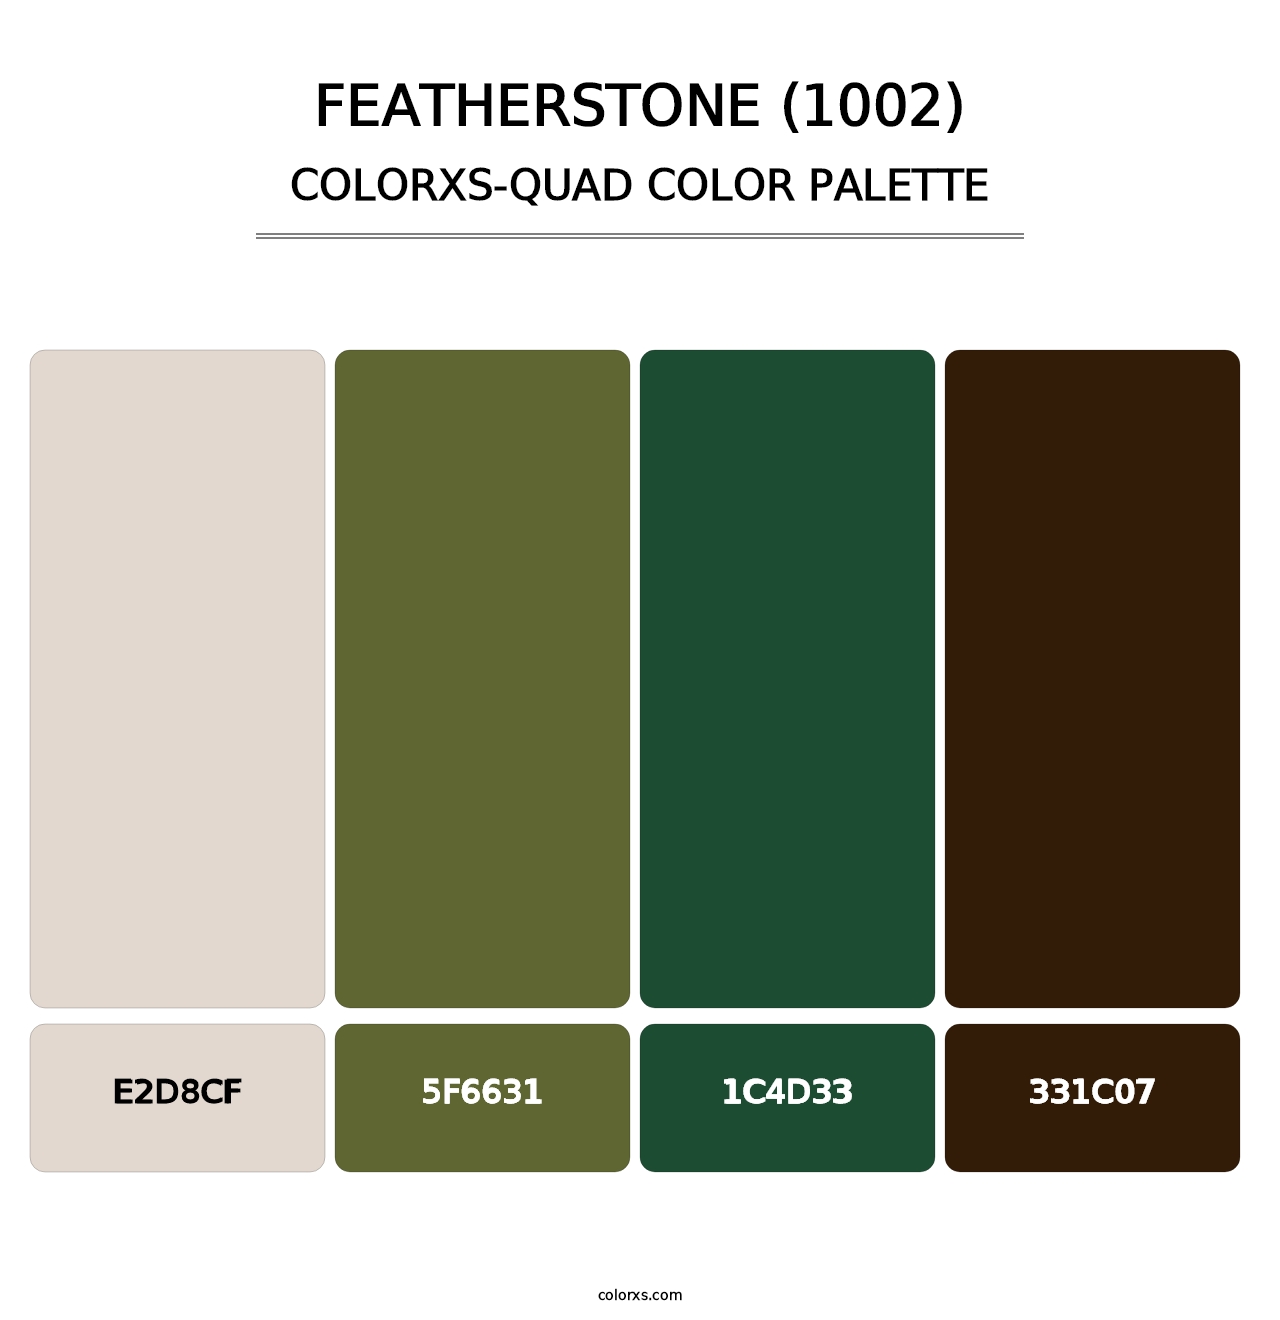 Featherstone (1002) - Colorxs Quad Palette